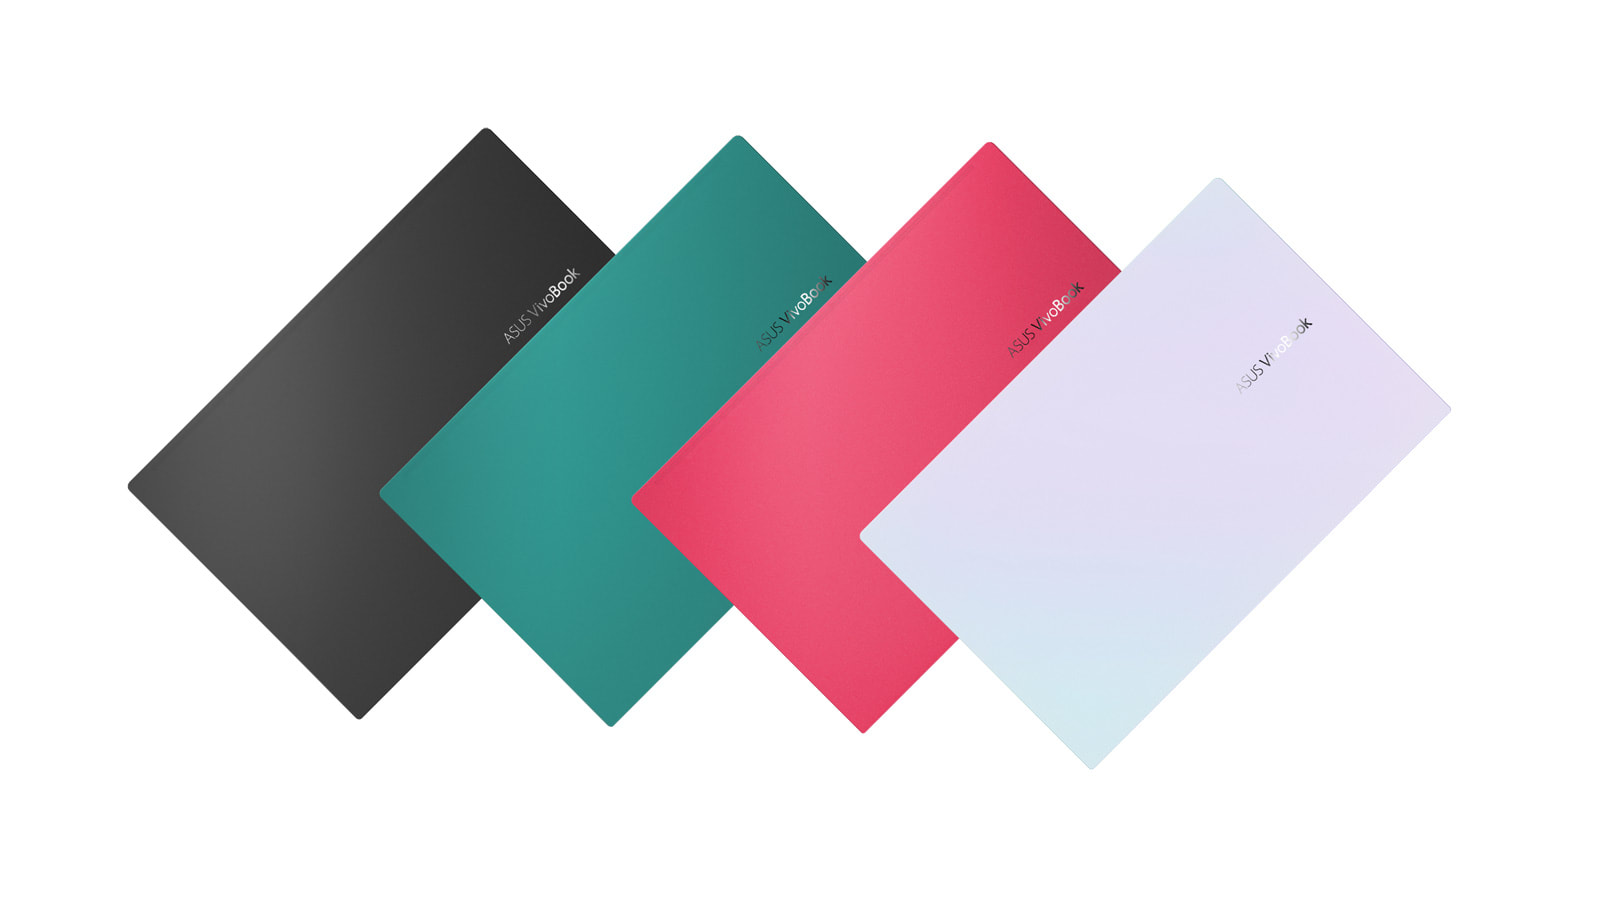 ASUS VivoBook S colors